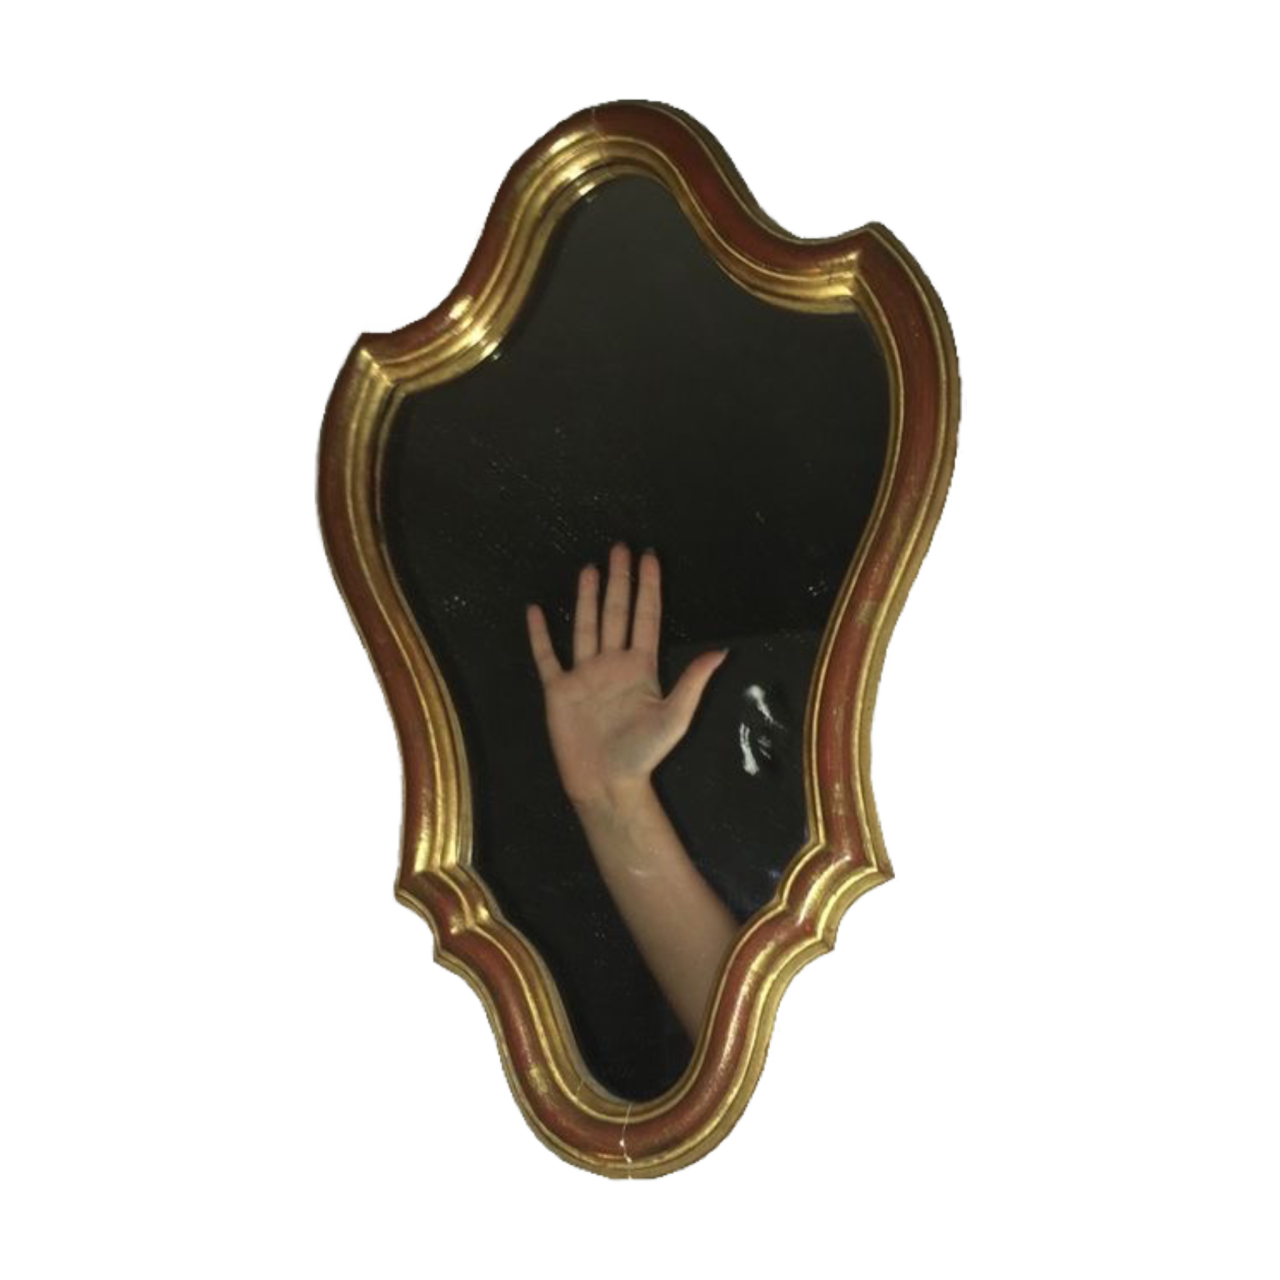 foto colorida de um espelho de moldura parecendo um brasão com o reflexo do braço de uma pessoa mostrando a palma da mão